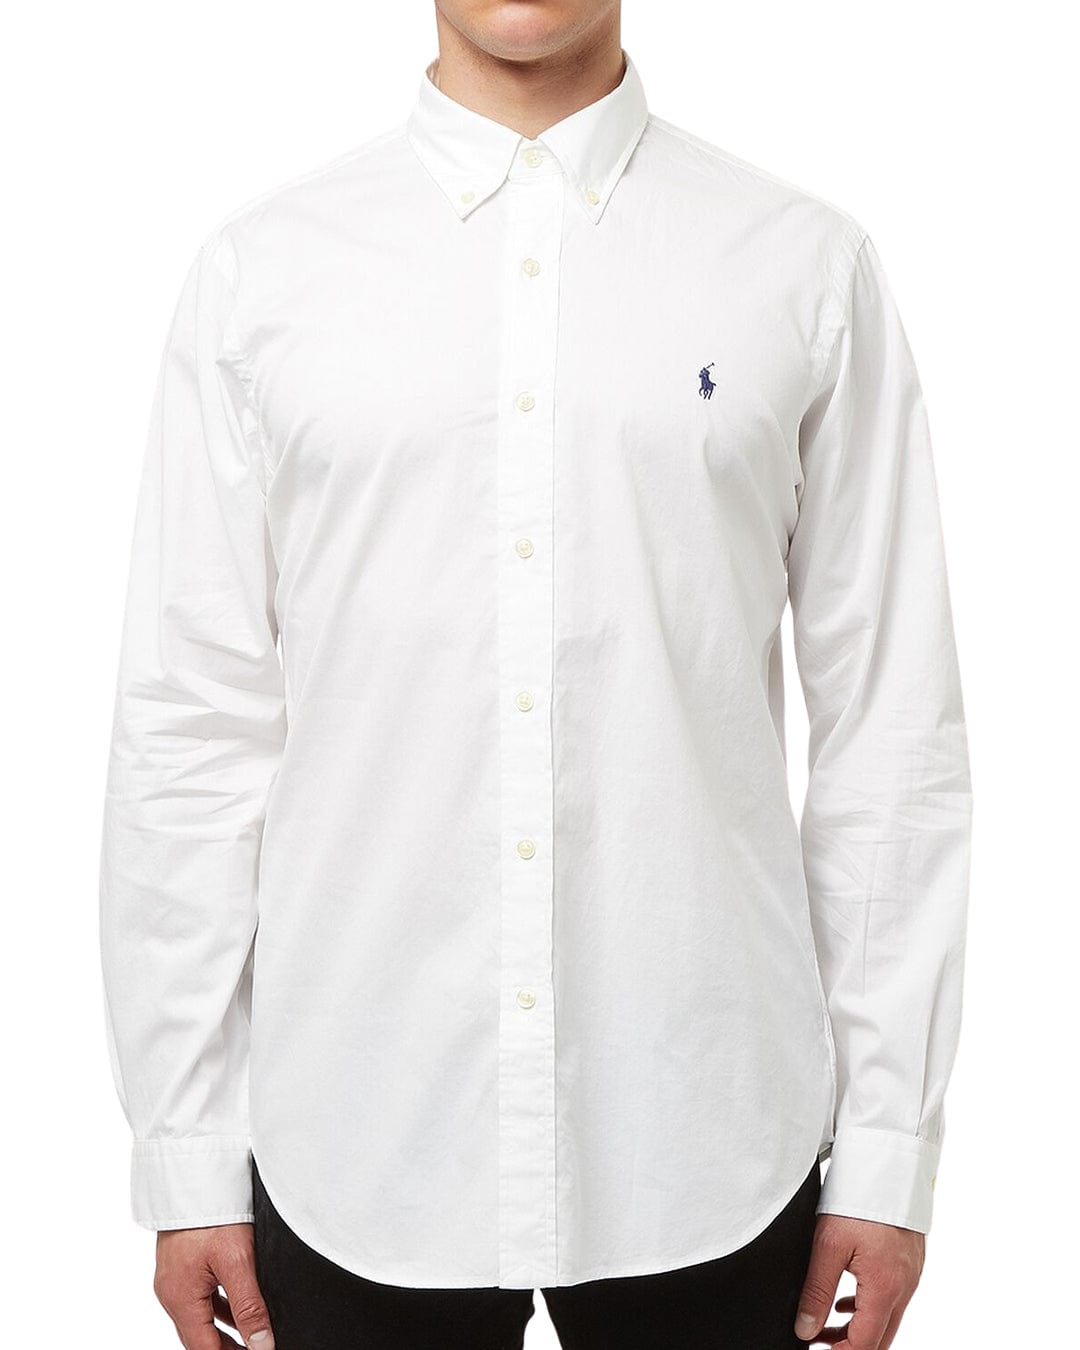 Polo Ralph Lauren Shirts Polo Ralph Lauren White Sport Long Sleeved Shirt